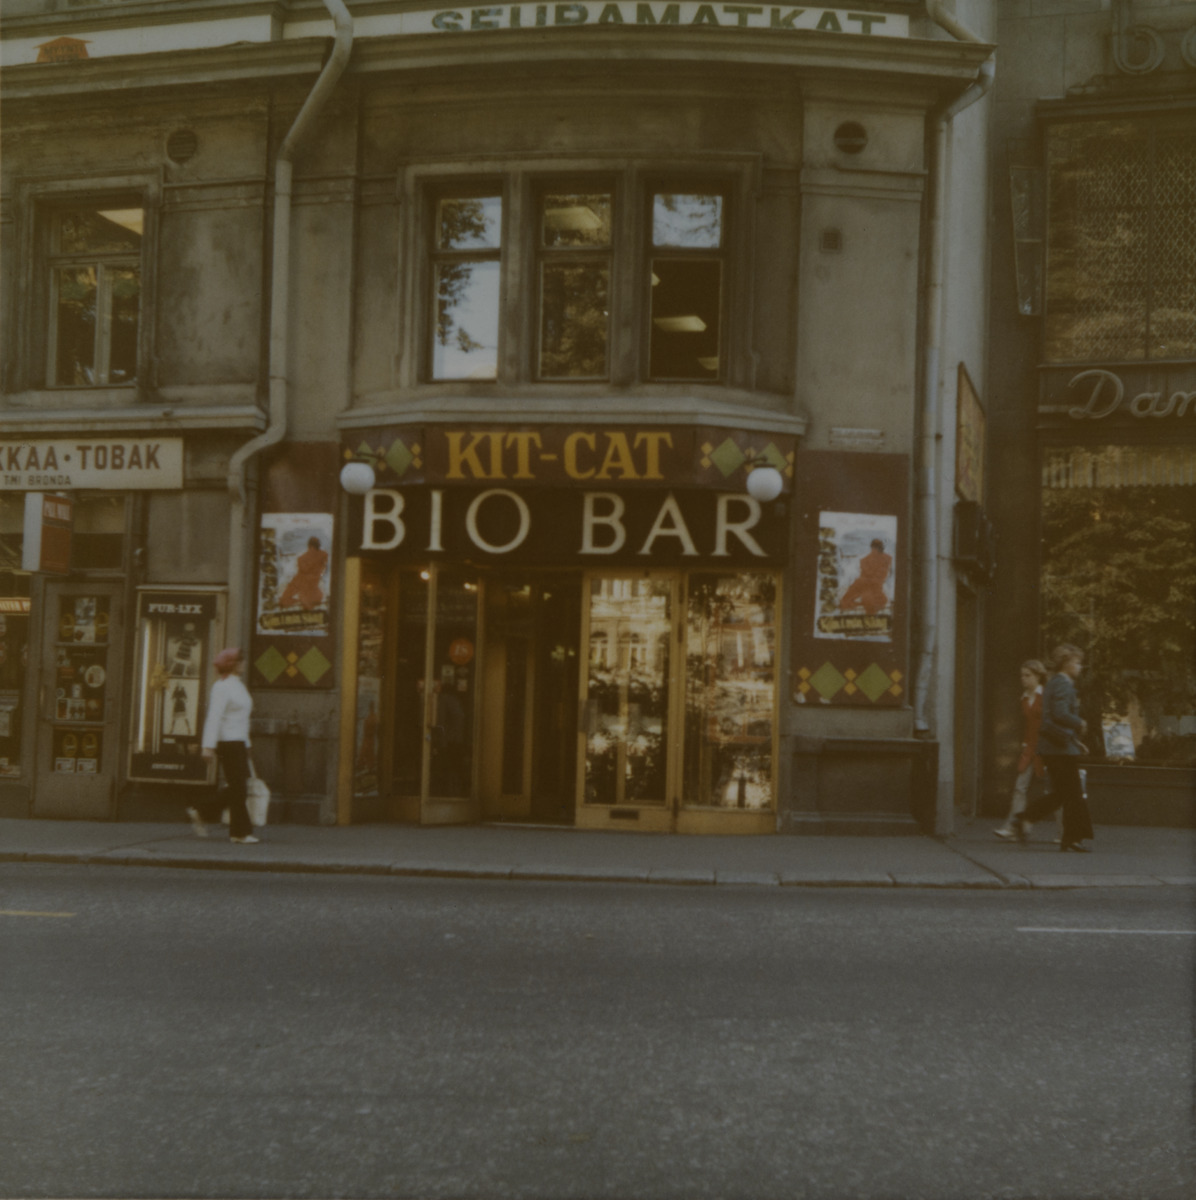 Non-stop-elokuvateatteri Kit-Catin sisäänkäynti kadulta nähtynä, Eteläesplanadi 20. Teatteri toimi tässä osoitteessa elokuusta 1934 elokuuhun 1972.